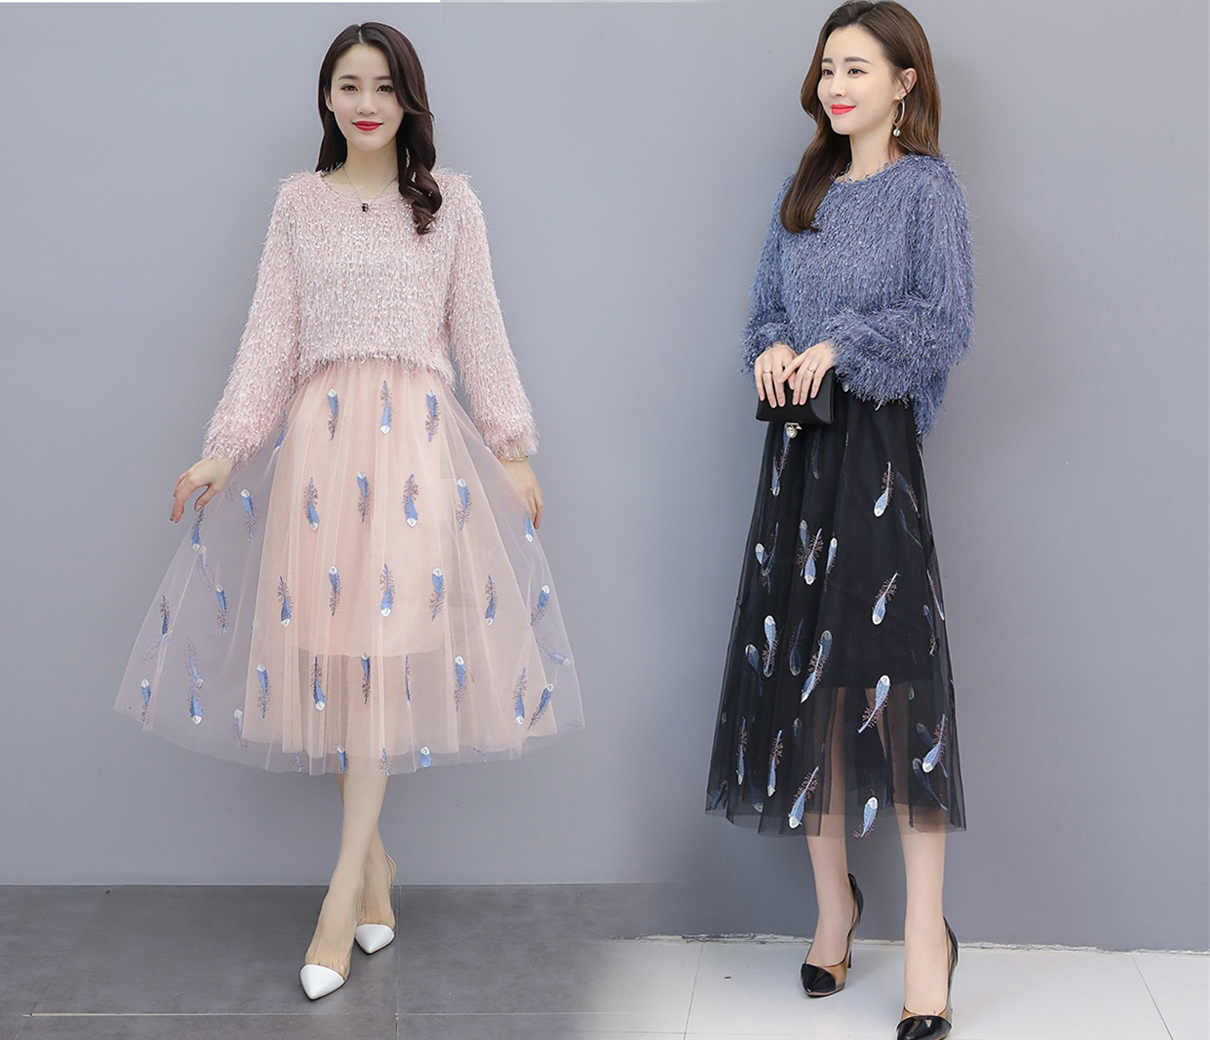 Đầm Váy Dự Tiệc Dáng Xòe Phối Lưới Kim Sa Cao Cấp mua Online giá tốt   NhaBanHangcom